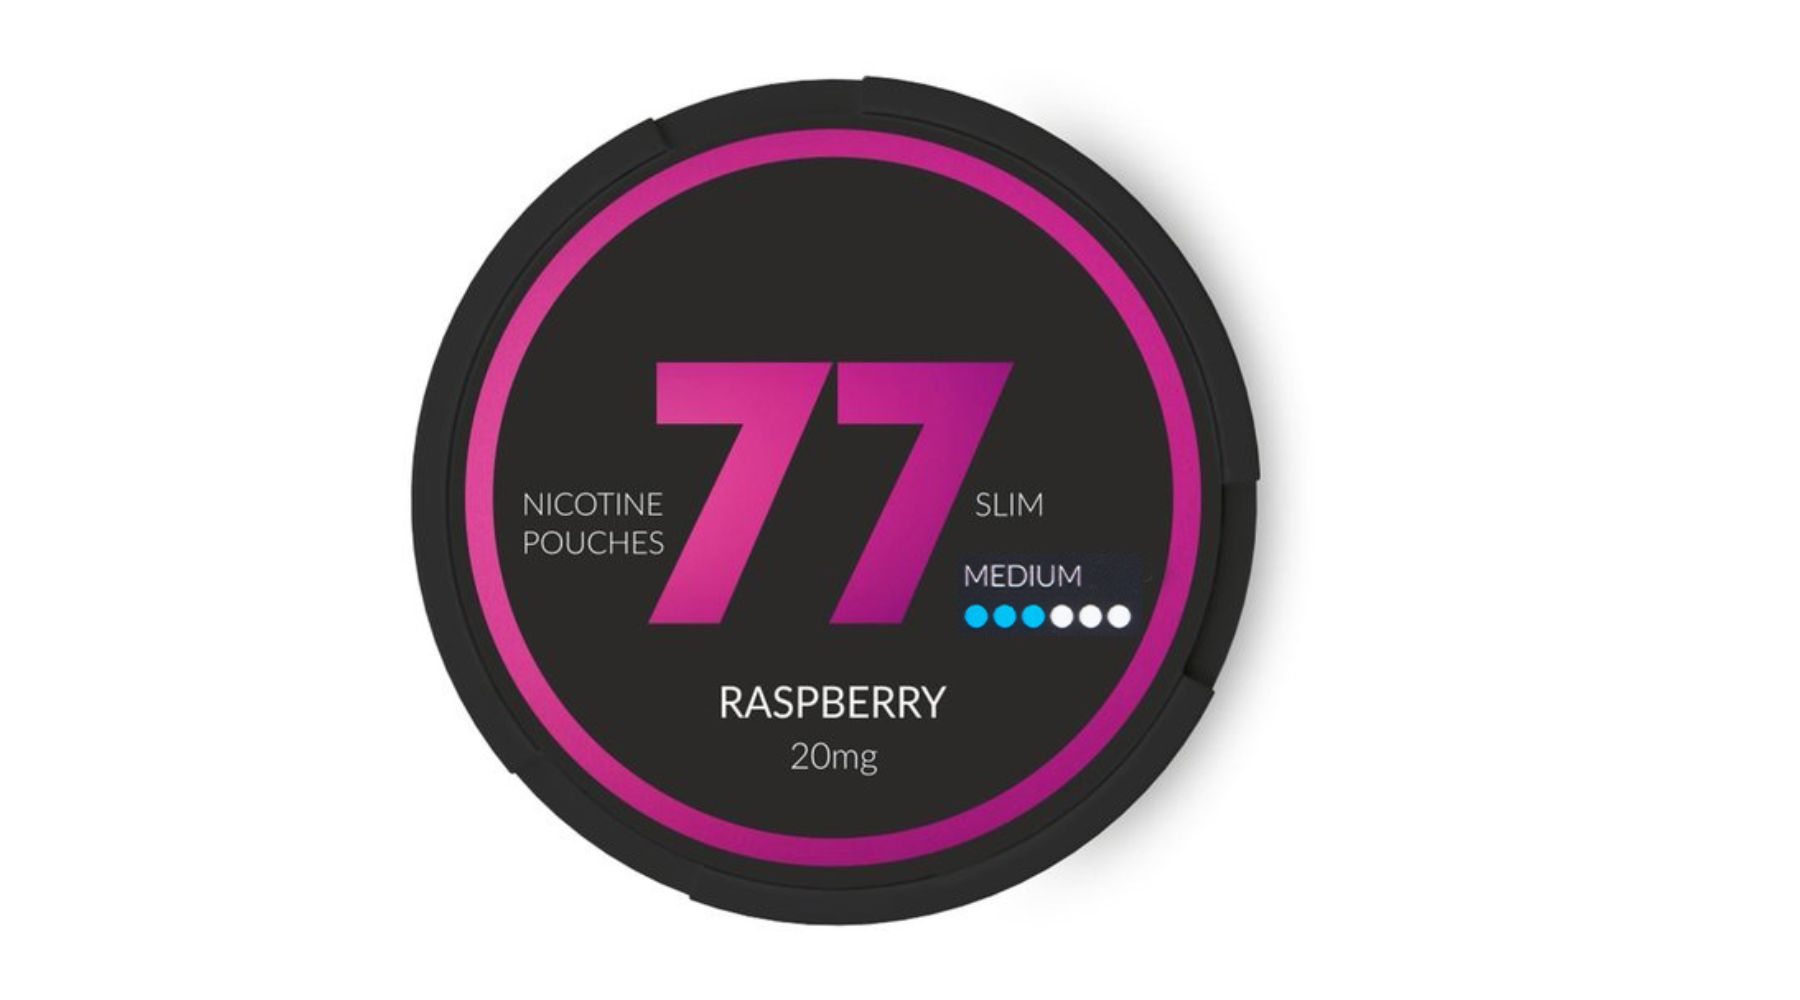 A tin of Raspberry 77 nicotine pouches